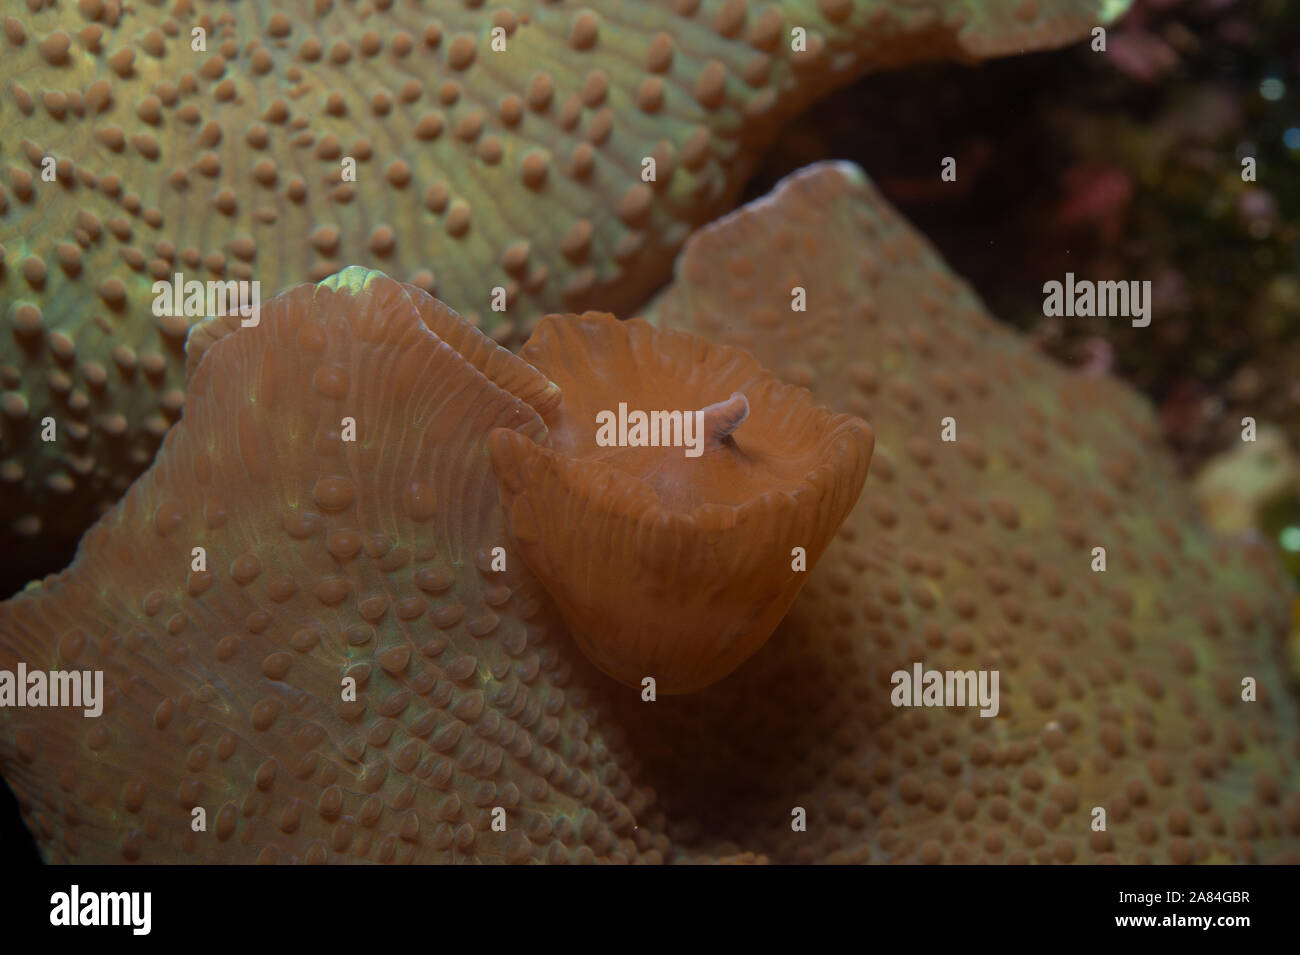 Reproduktion durch Knospung von Mushroom Coral, Discosoma sp., Discosomatidae, Bali, Indonesien, Indo-Pazifischen Ozean Stockfoto